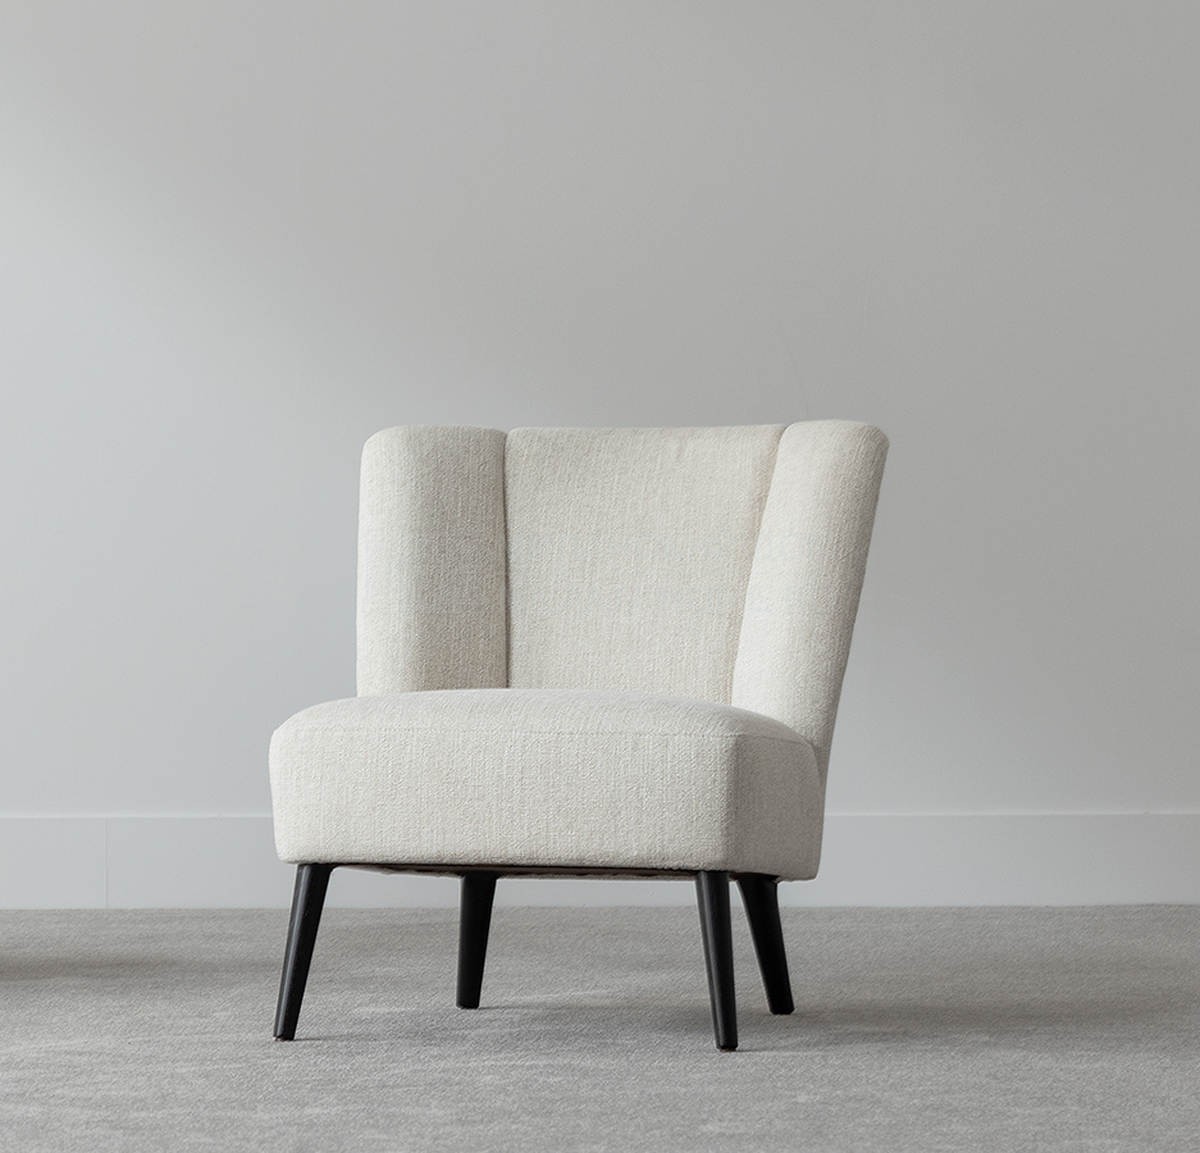 Кресло Colette armchair из Франции фабрики HAMILTON CONTE